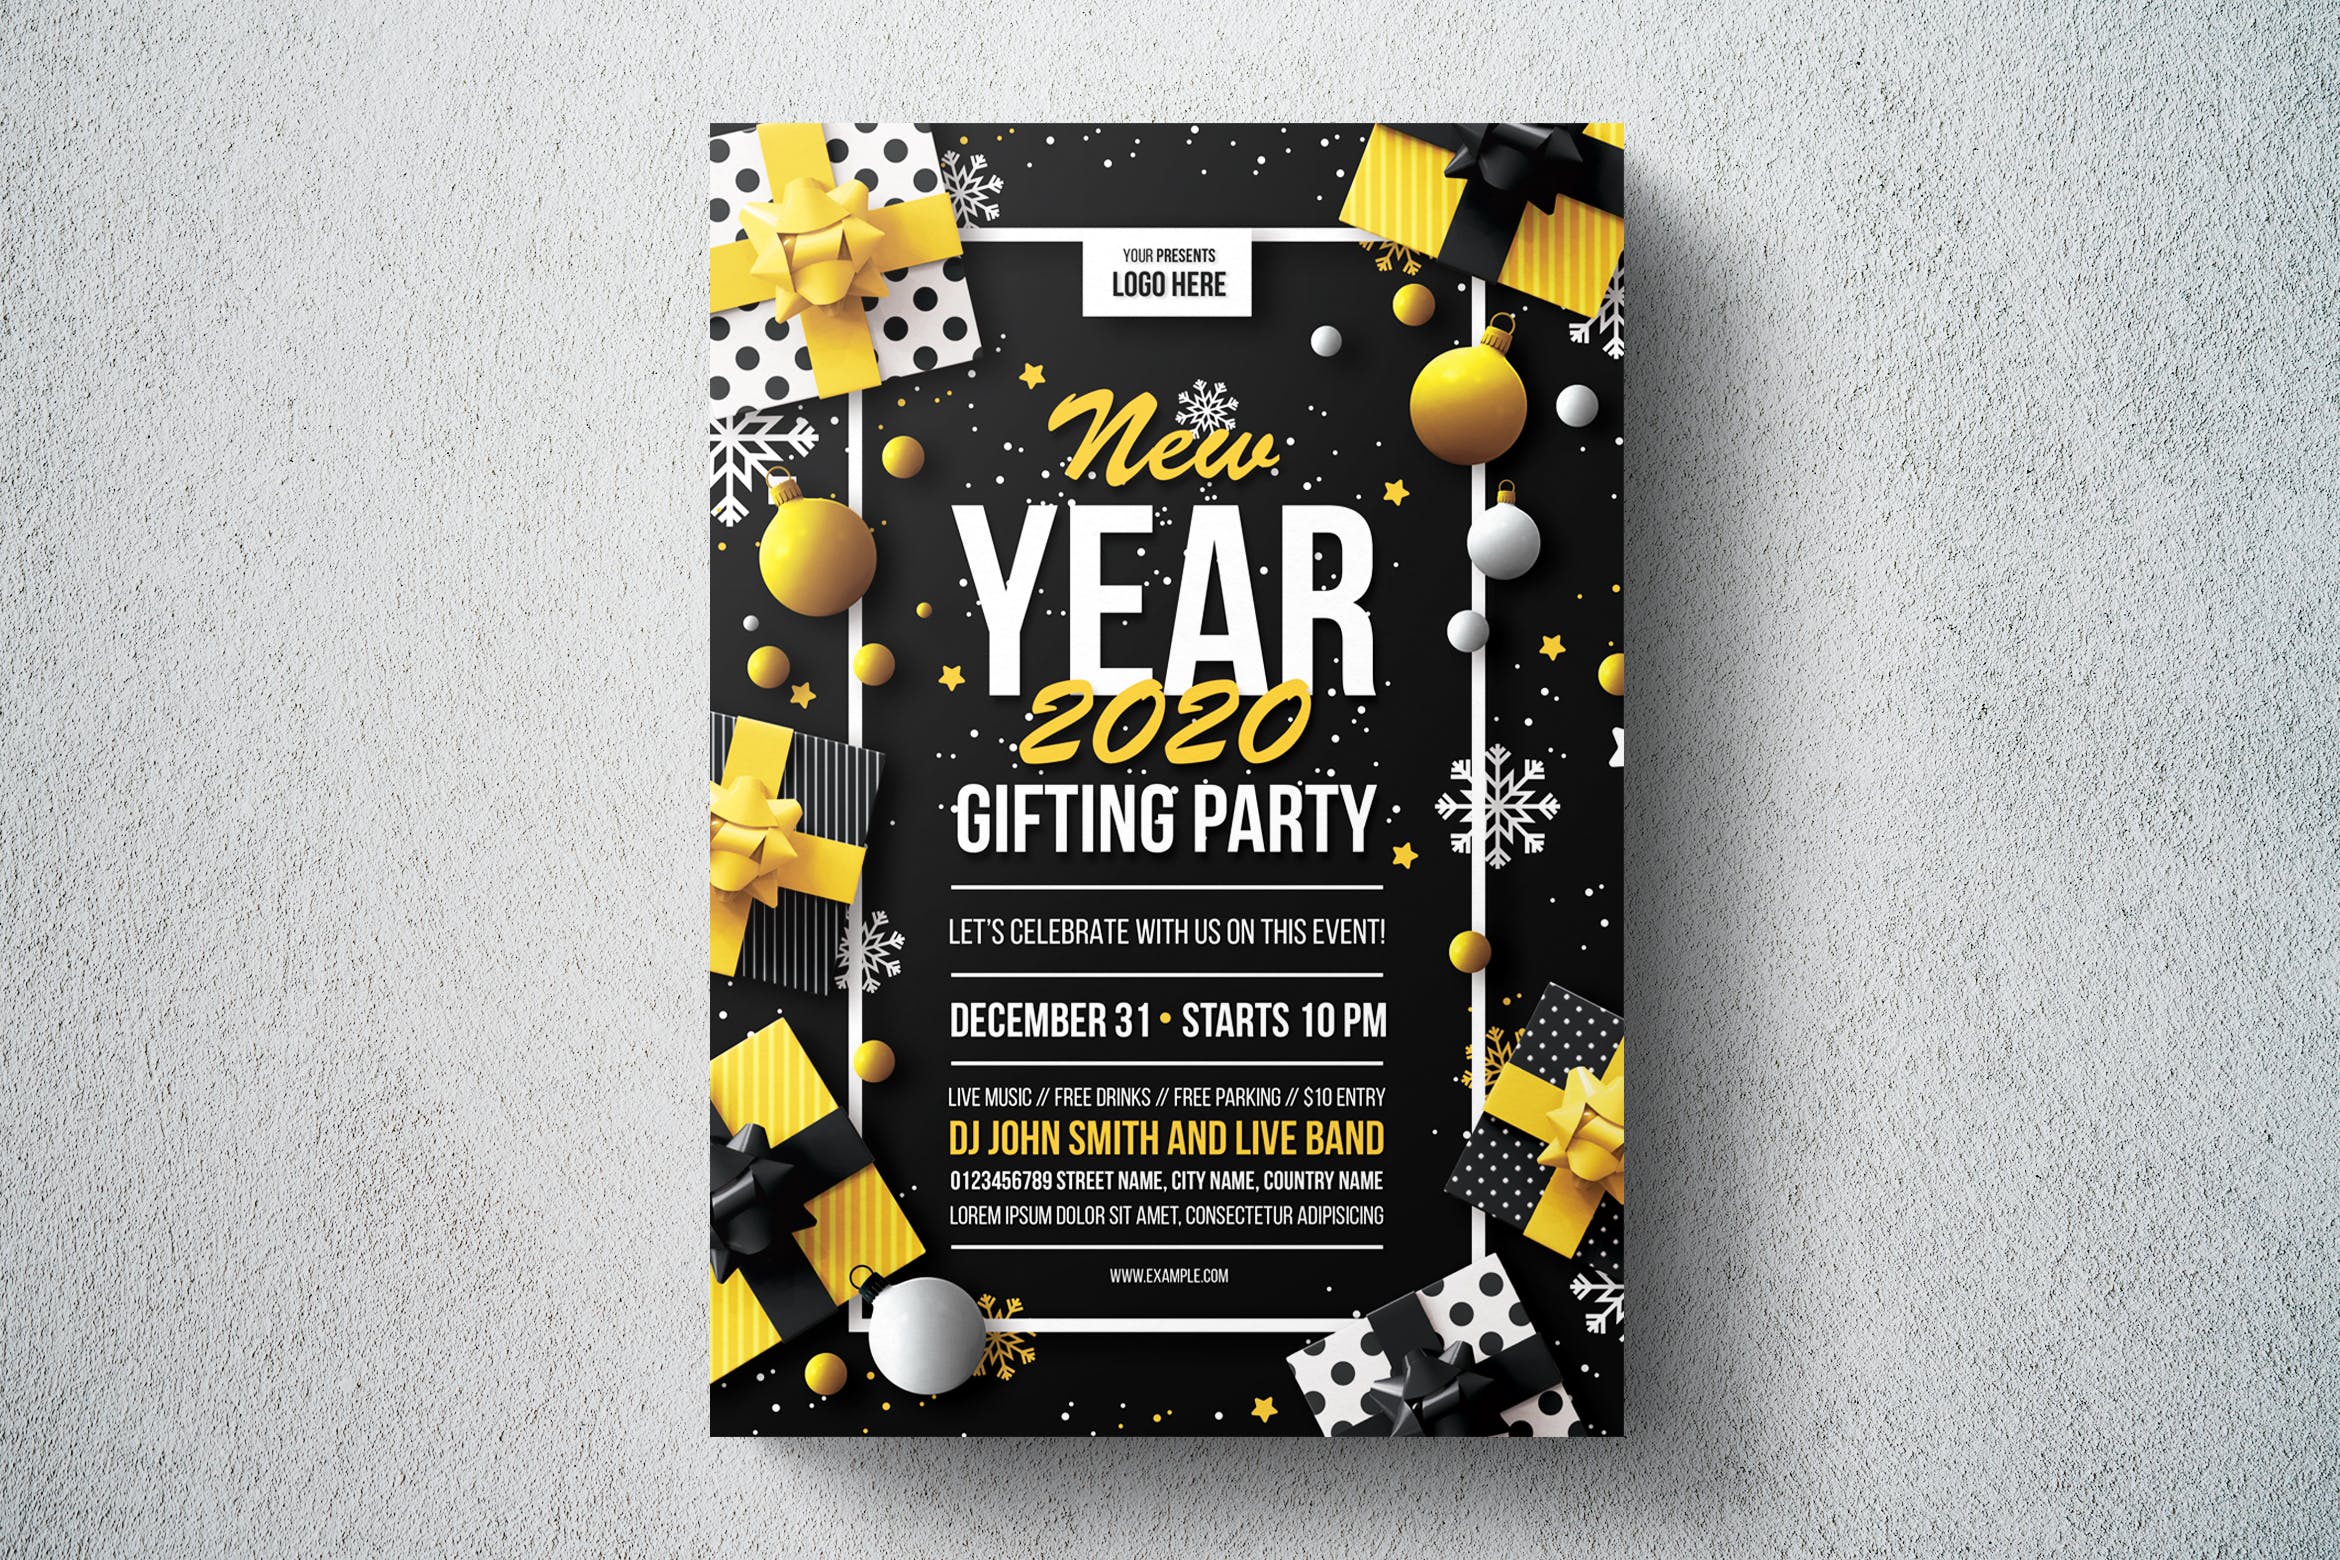 2020年新年互换礼物派对海报传单设计模板 New Year Gifting Party Flyer Template插图